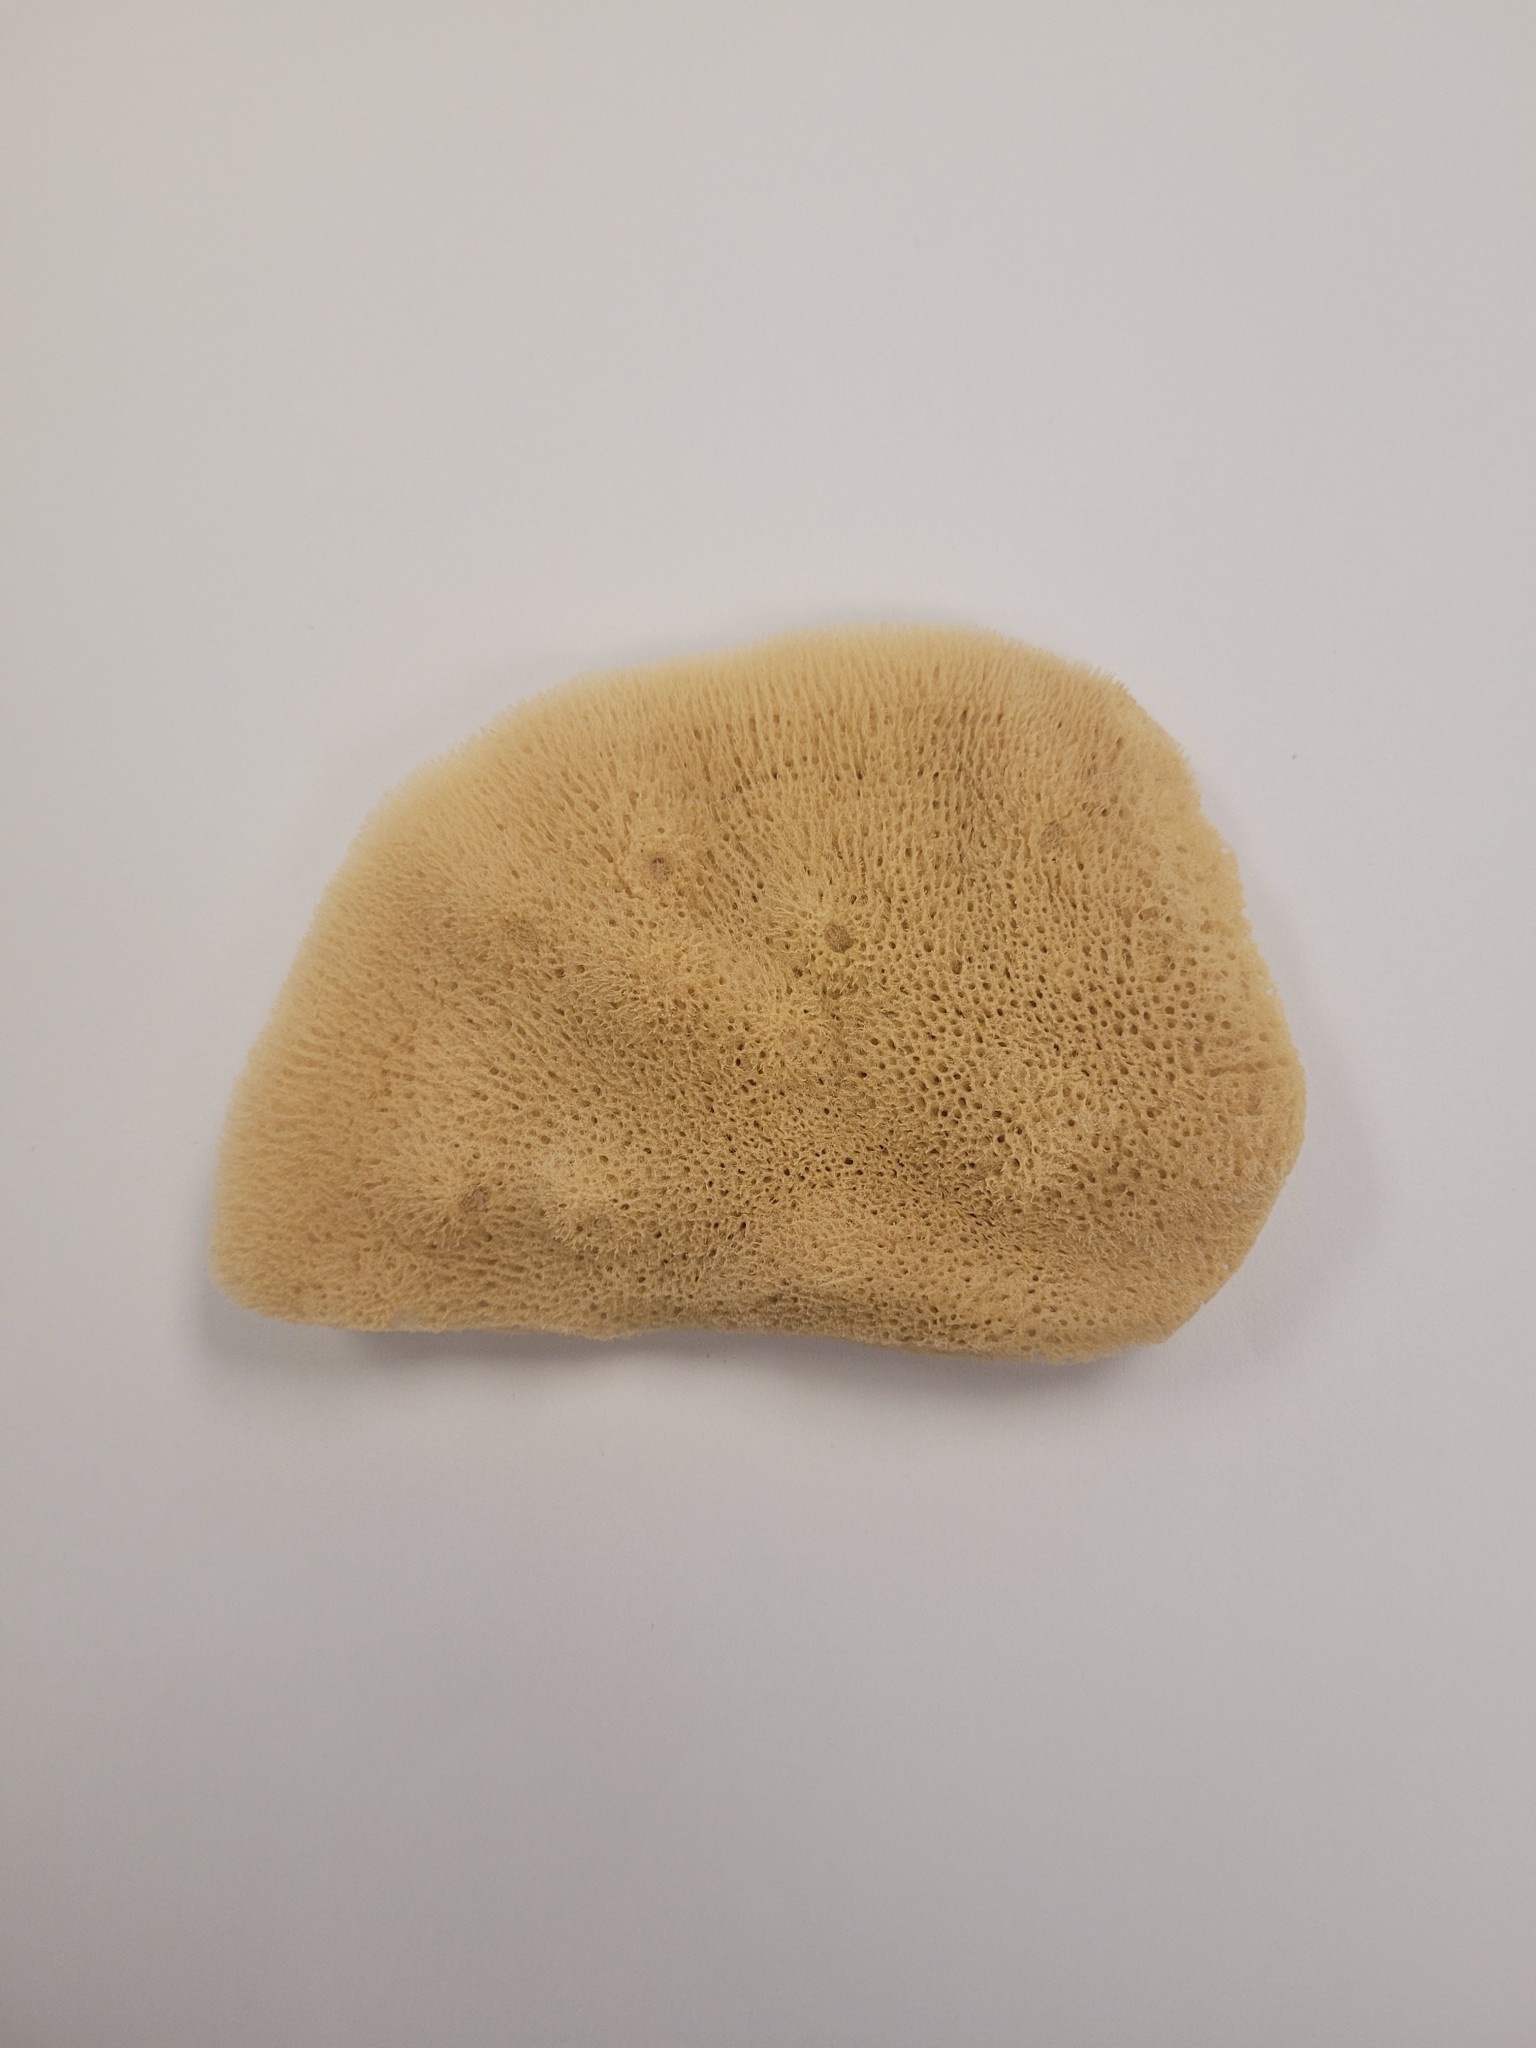 Agean Sponge Elephant Ear Sponge - Large